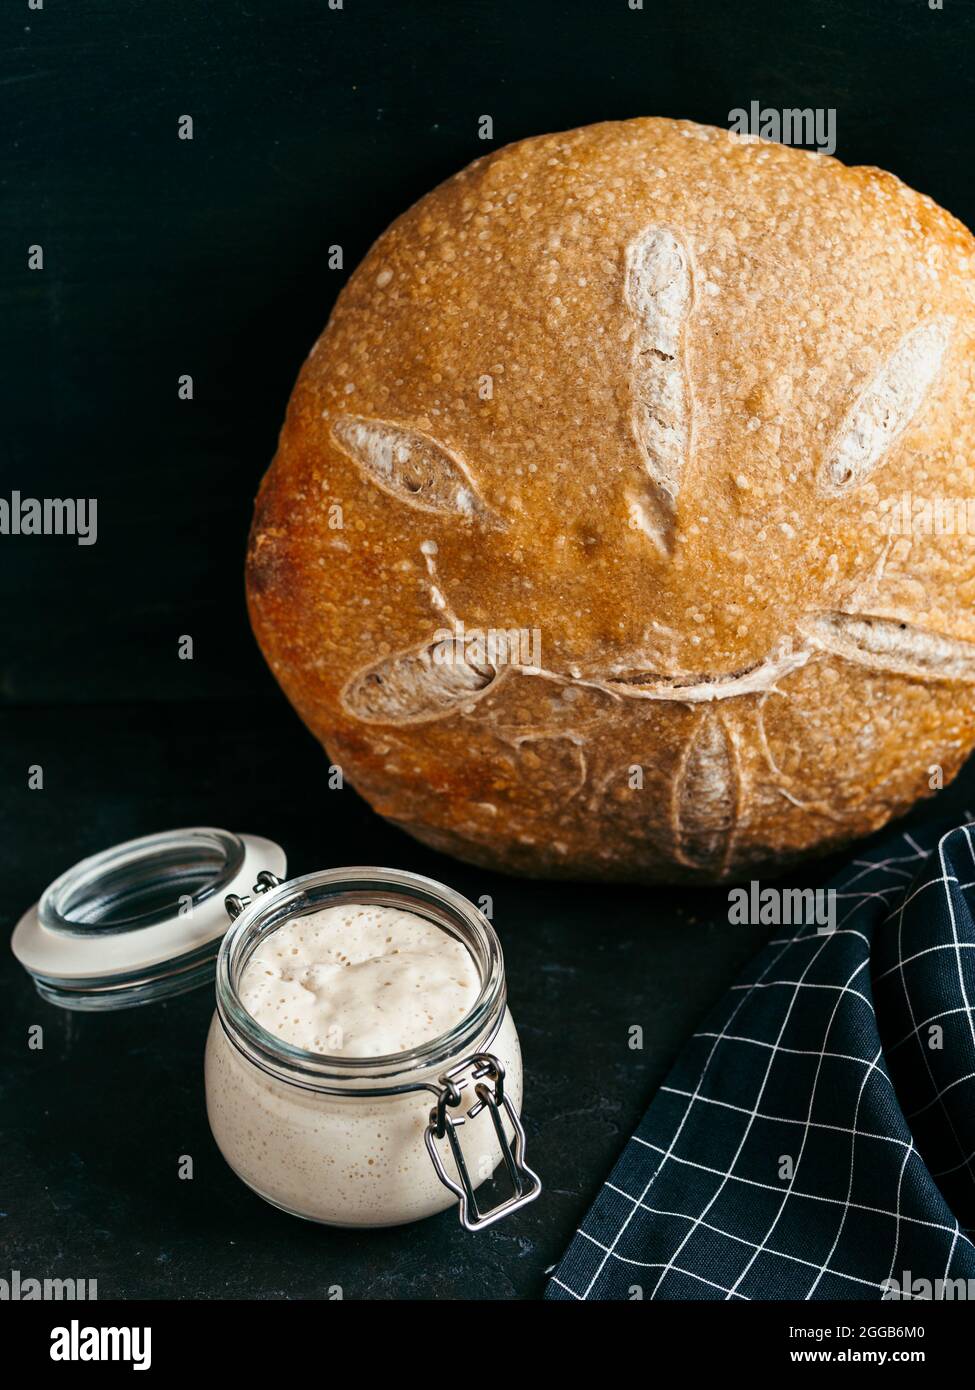 Sauerteig-Vorspeise und Weizensauerteig-Brot. Weizensaurer Teigvorspeise im Glasgefäß und leckeres hausgemachtes rundes Sauerteigbrot auf schwarzem Hintergrund. Hausgemachtes Sauerteig Brot machen Konzept. Vertikal Stockfoto